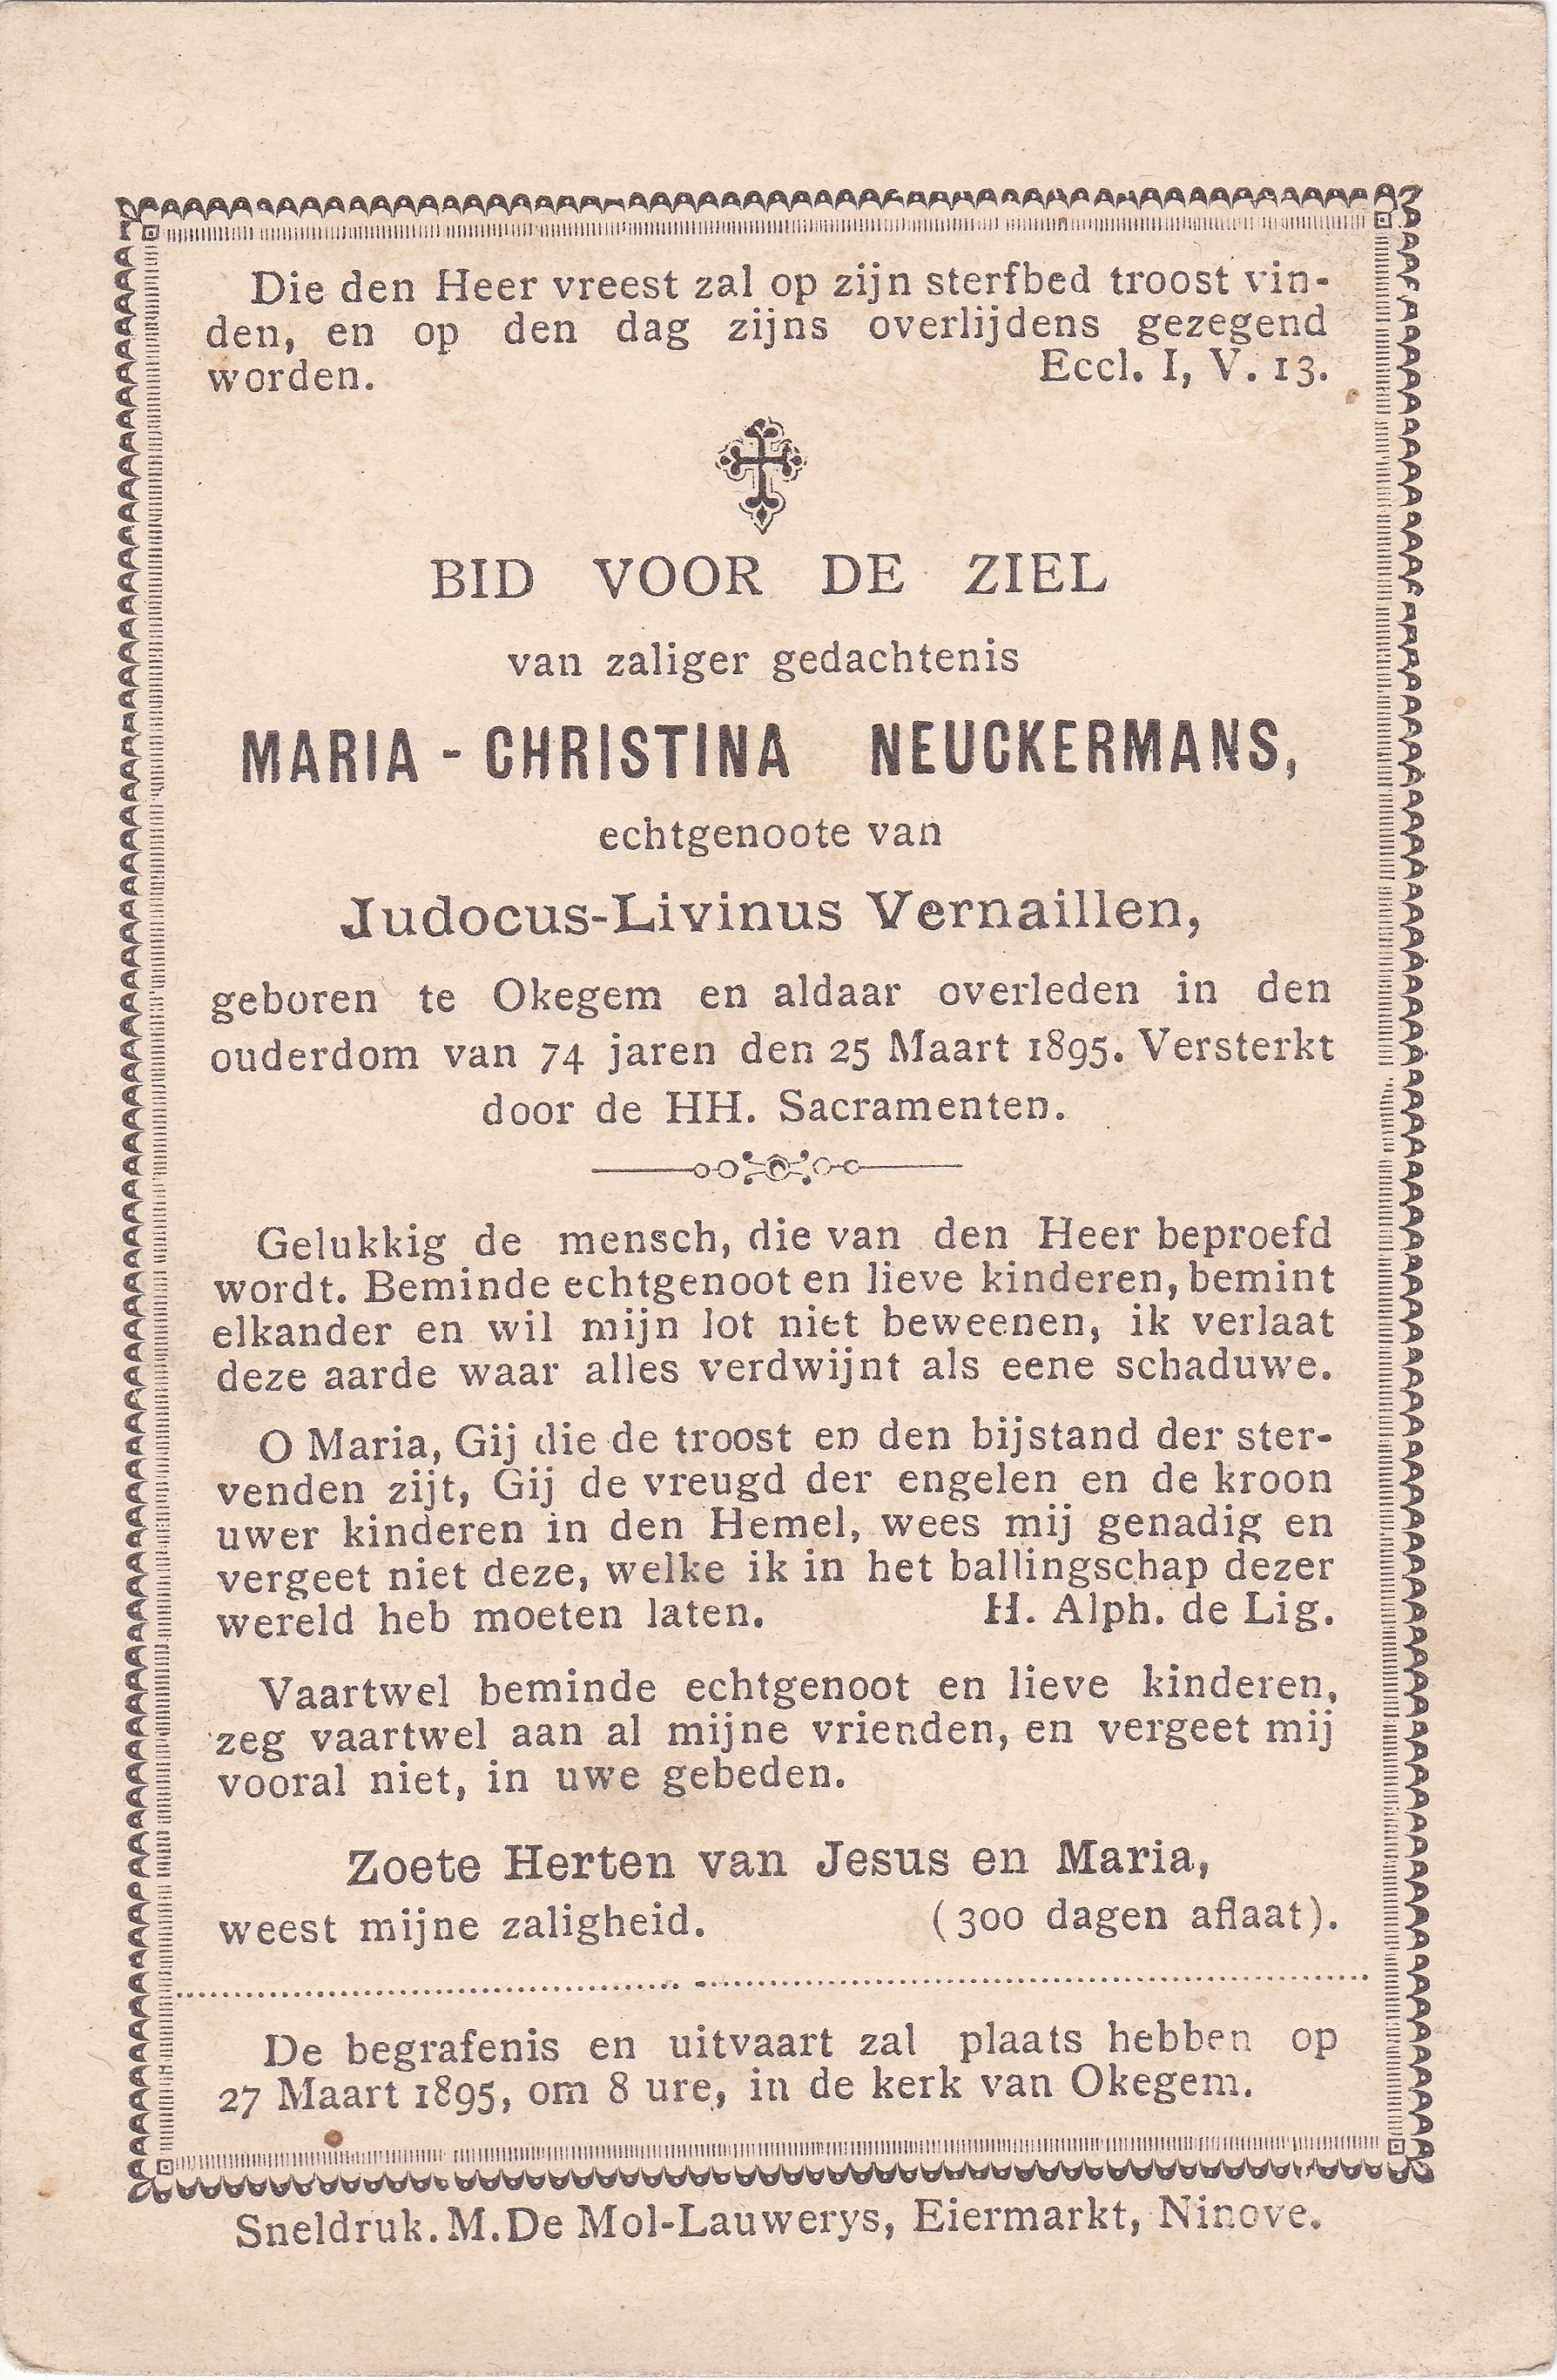 Neuckermans Maria Christina